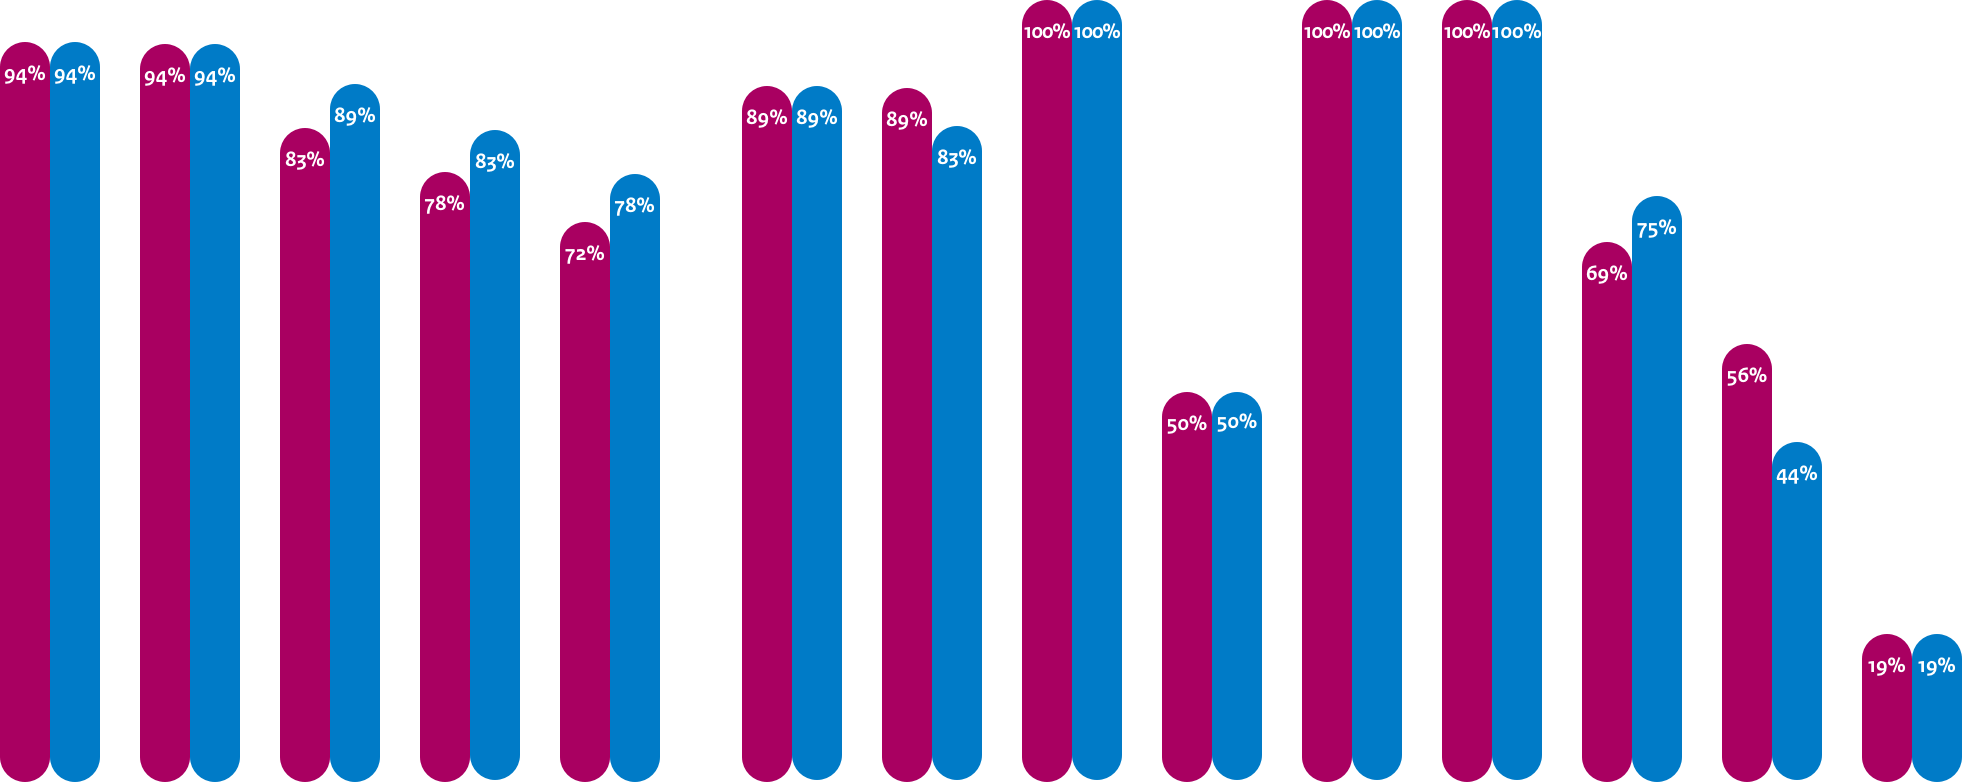 Gemiddelde adoptie webstandaarden Provincies
DNSSEC: 94%, 94%
TLS: 94%, 94%
TLS NCSC: 83%, 89%
HTTPS: 78%, 83%
HSTS: 72%, 78%

Gemiddelde adoptie mailstandaarden Anti-phishing Provincies
DMARC: 89%, 89%
DKIM: 89%, 83%
SPF: 100%, 100%
DMARC Policy: 50%, 50%
SPF Policy: 100%, 100%

Gemiddelde adoptie mailstandaarden Vertrouwelijkheid Provincies
START TLS: 100%, 100%
START TLS NCSC: 69%, 75%
DNSSEC MX: 56%, 44%
DANE: 19%, 19%